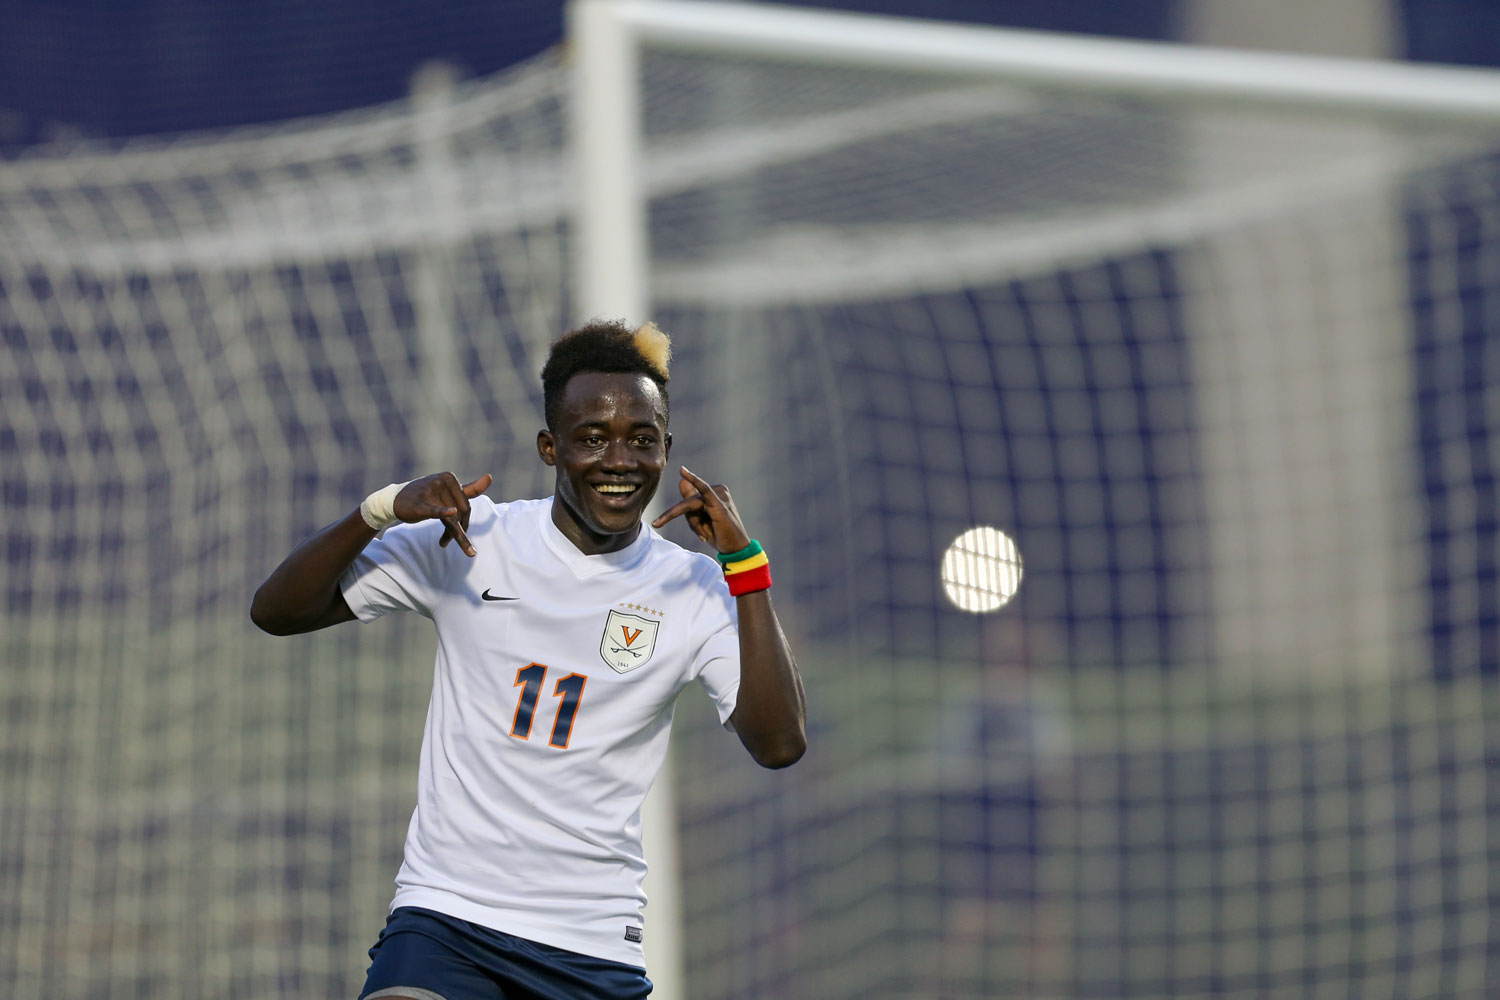 Edward Opoku celebrates on the soccer field